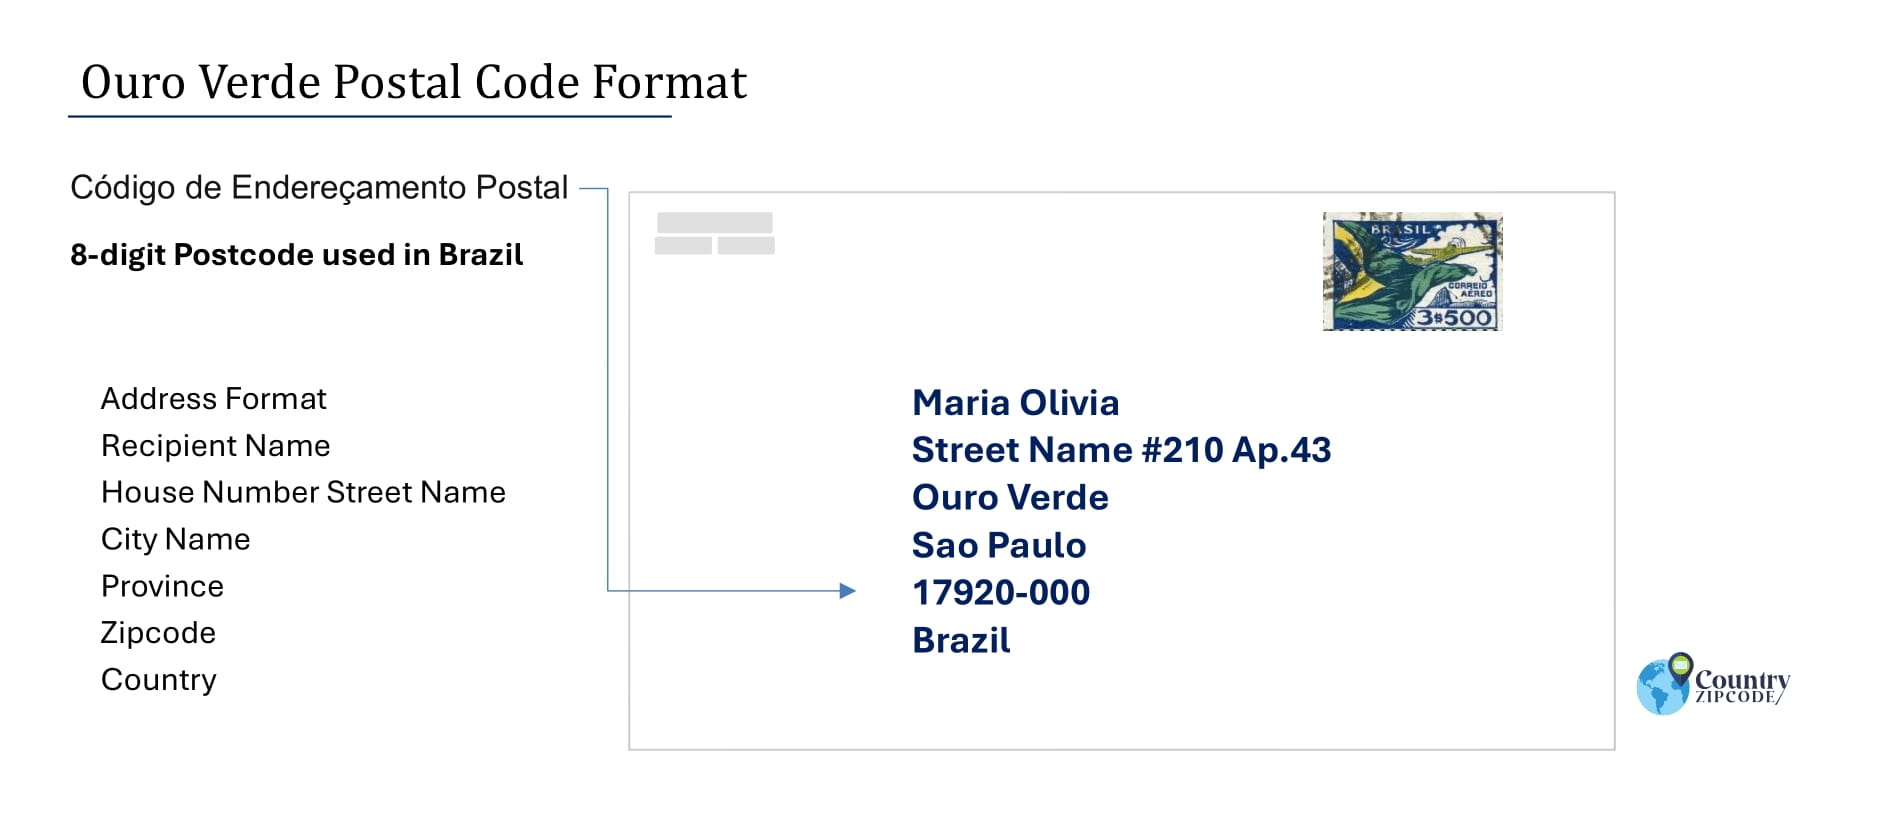 Example of Codigo de Enderecamento Postal and Address format of Ouro Verde Sao Paulo Brazil